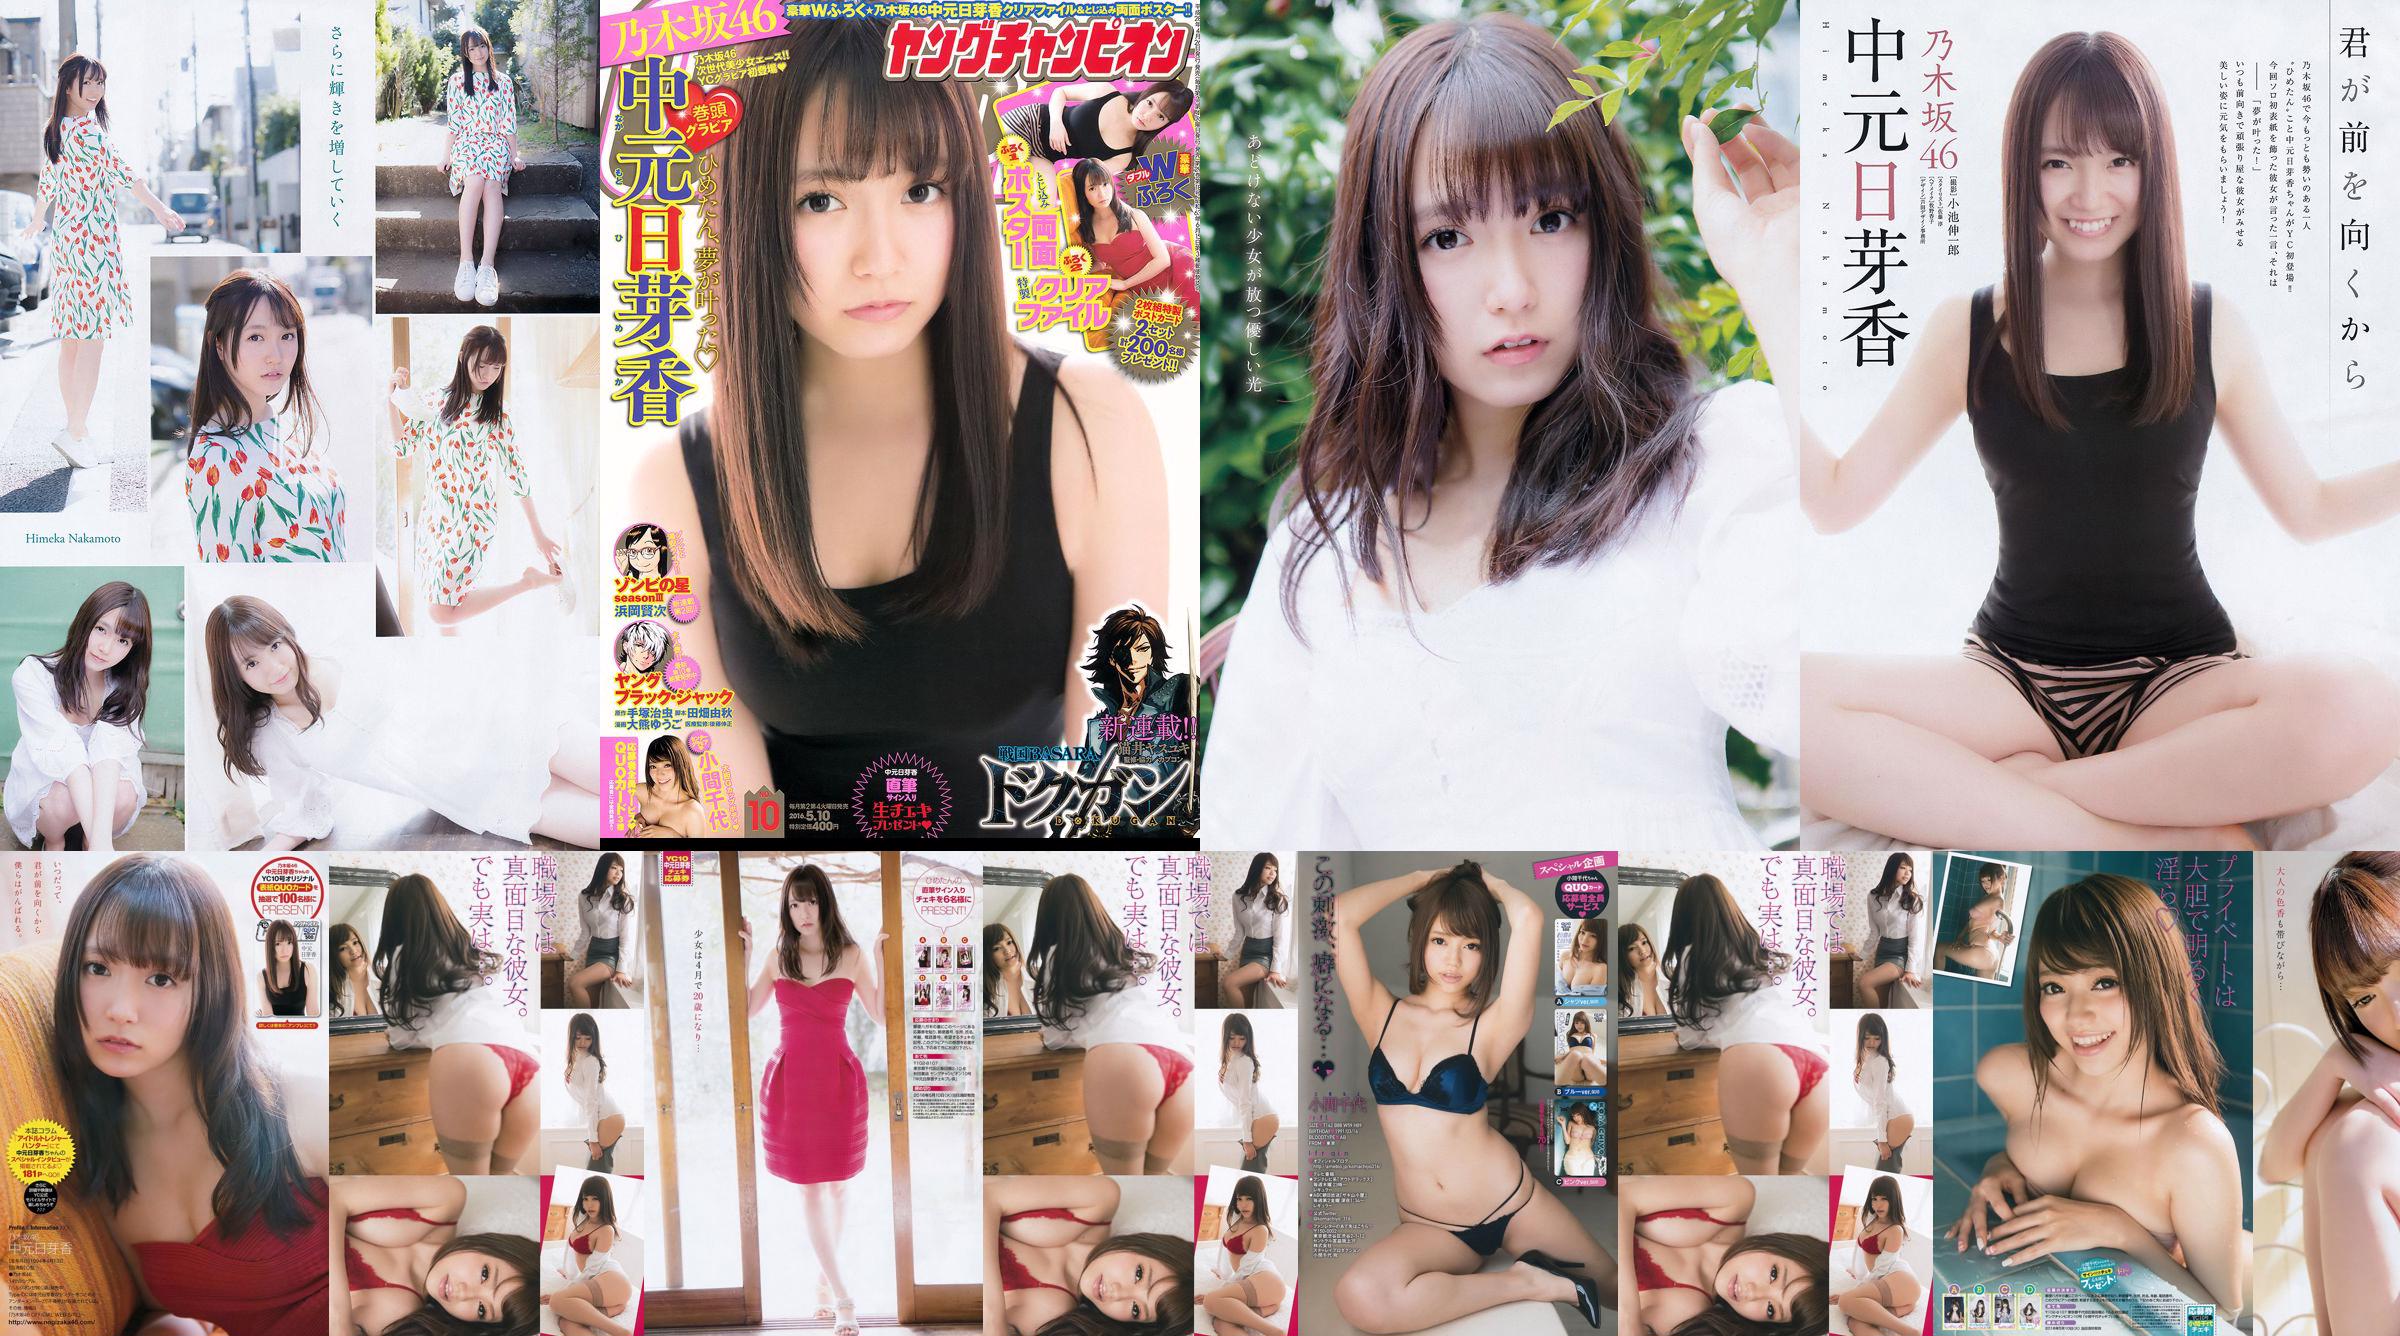 [Jonge kampioen] Nakamoto Nichiko Koma Chiyo 2016 No.10 Photo Magazine No.8a1d47 Pagina 7